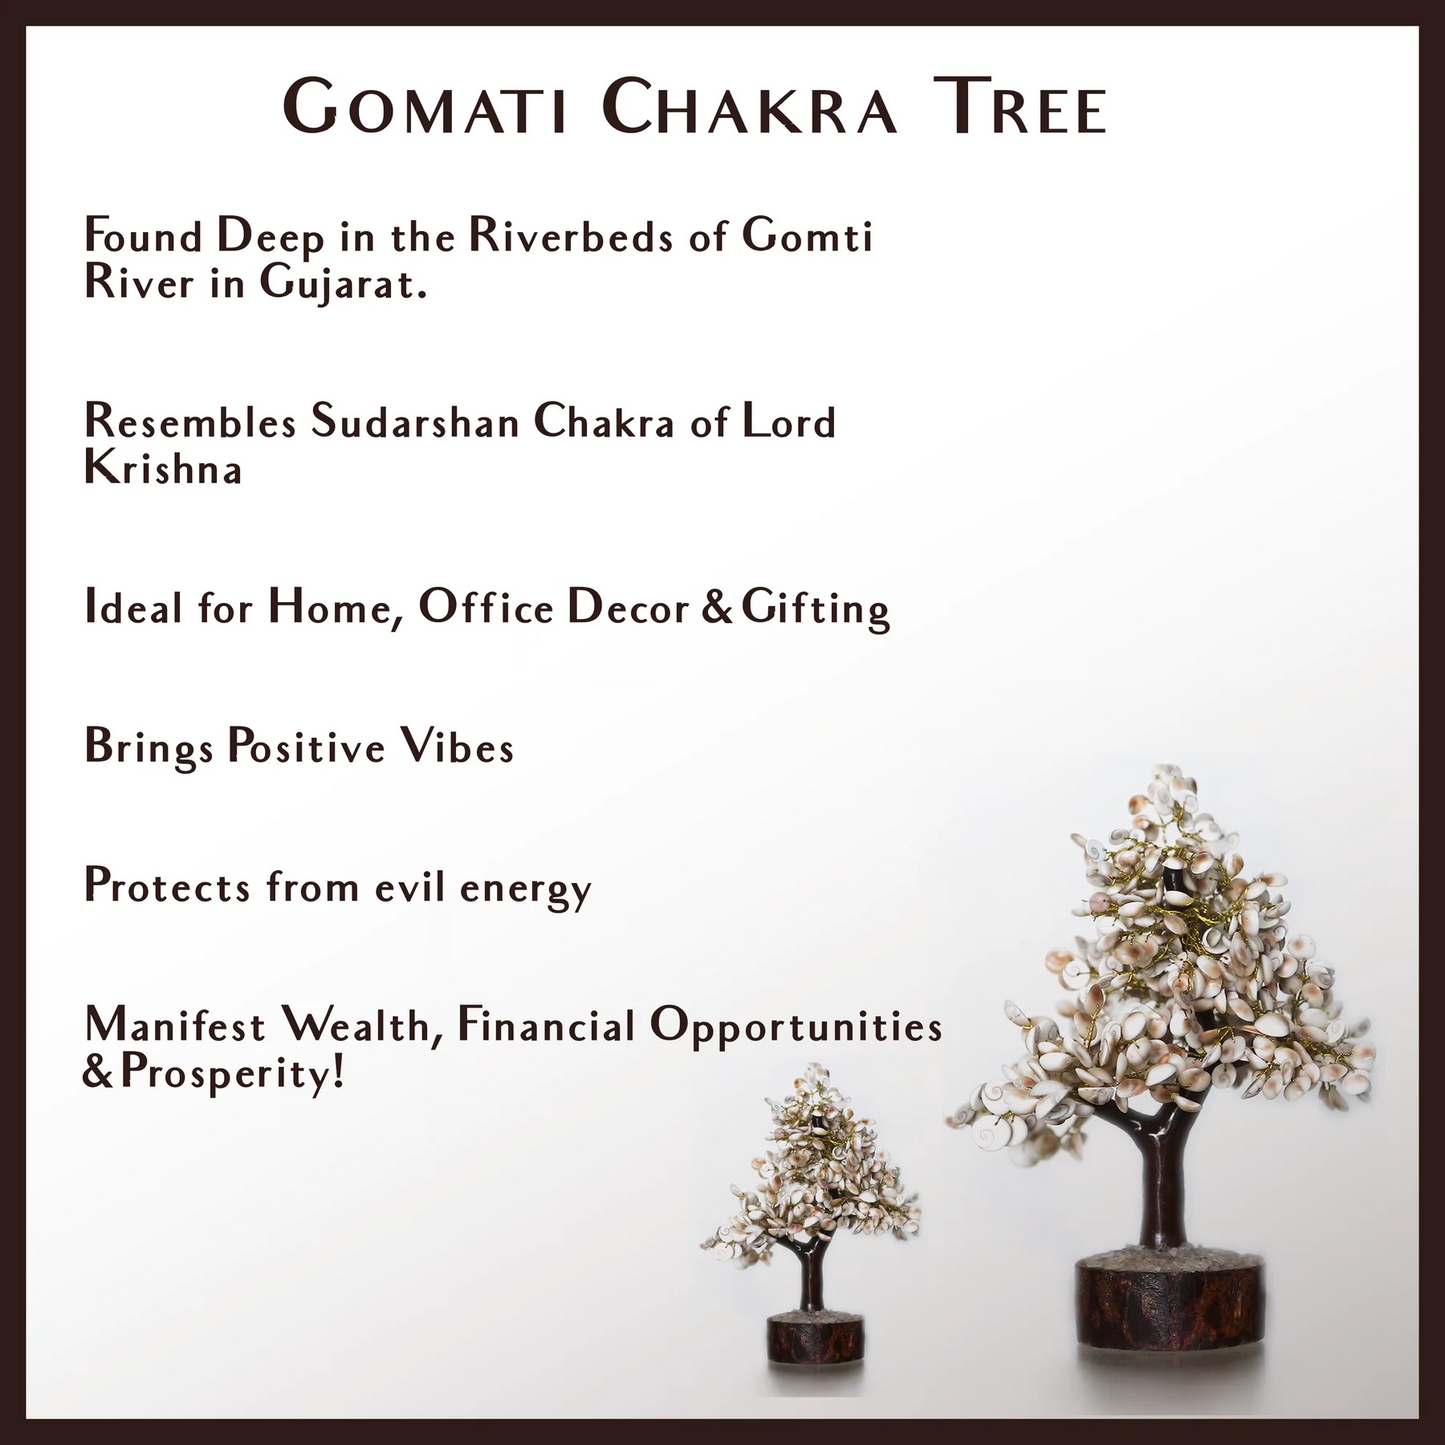 Gomati Chakra Tree